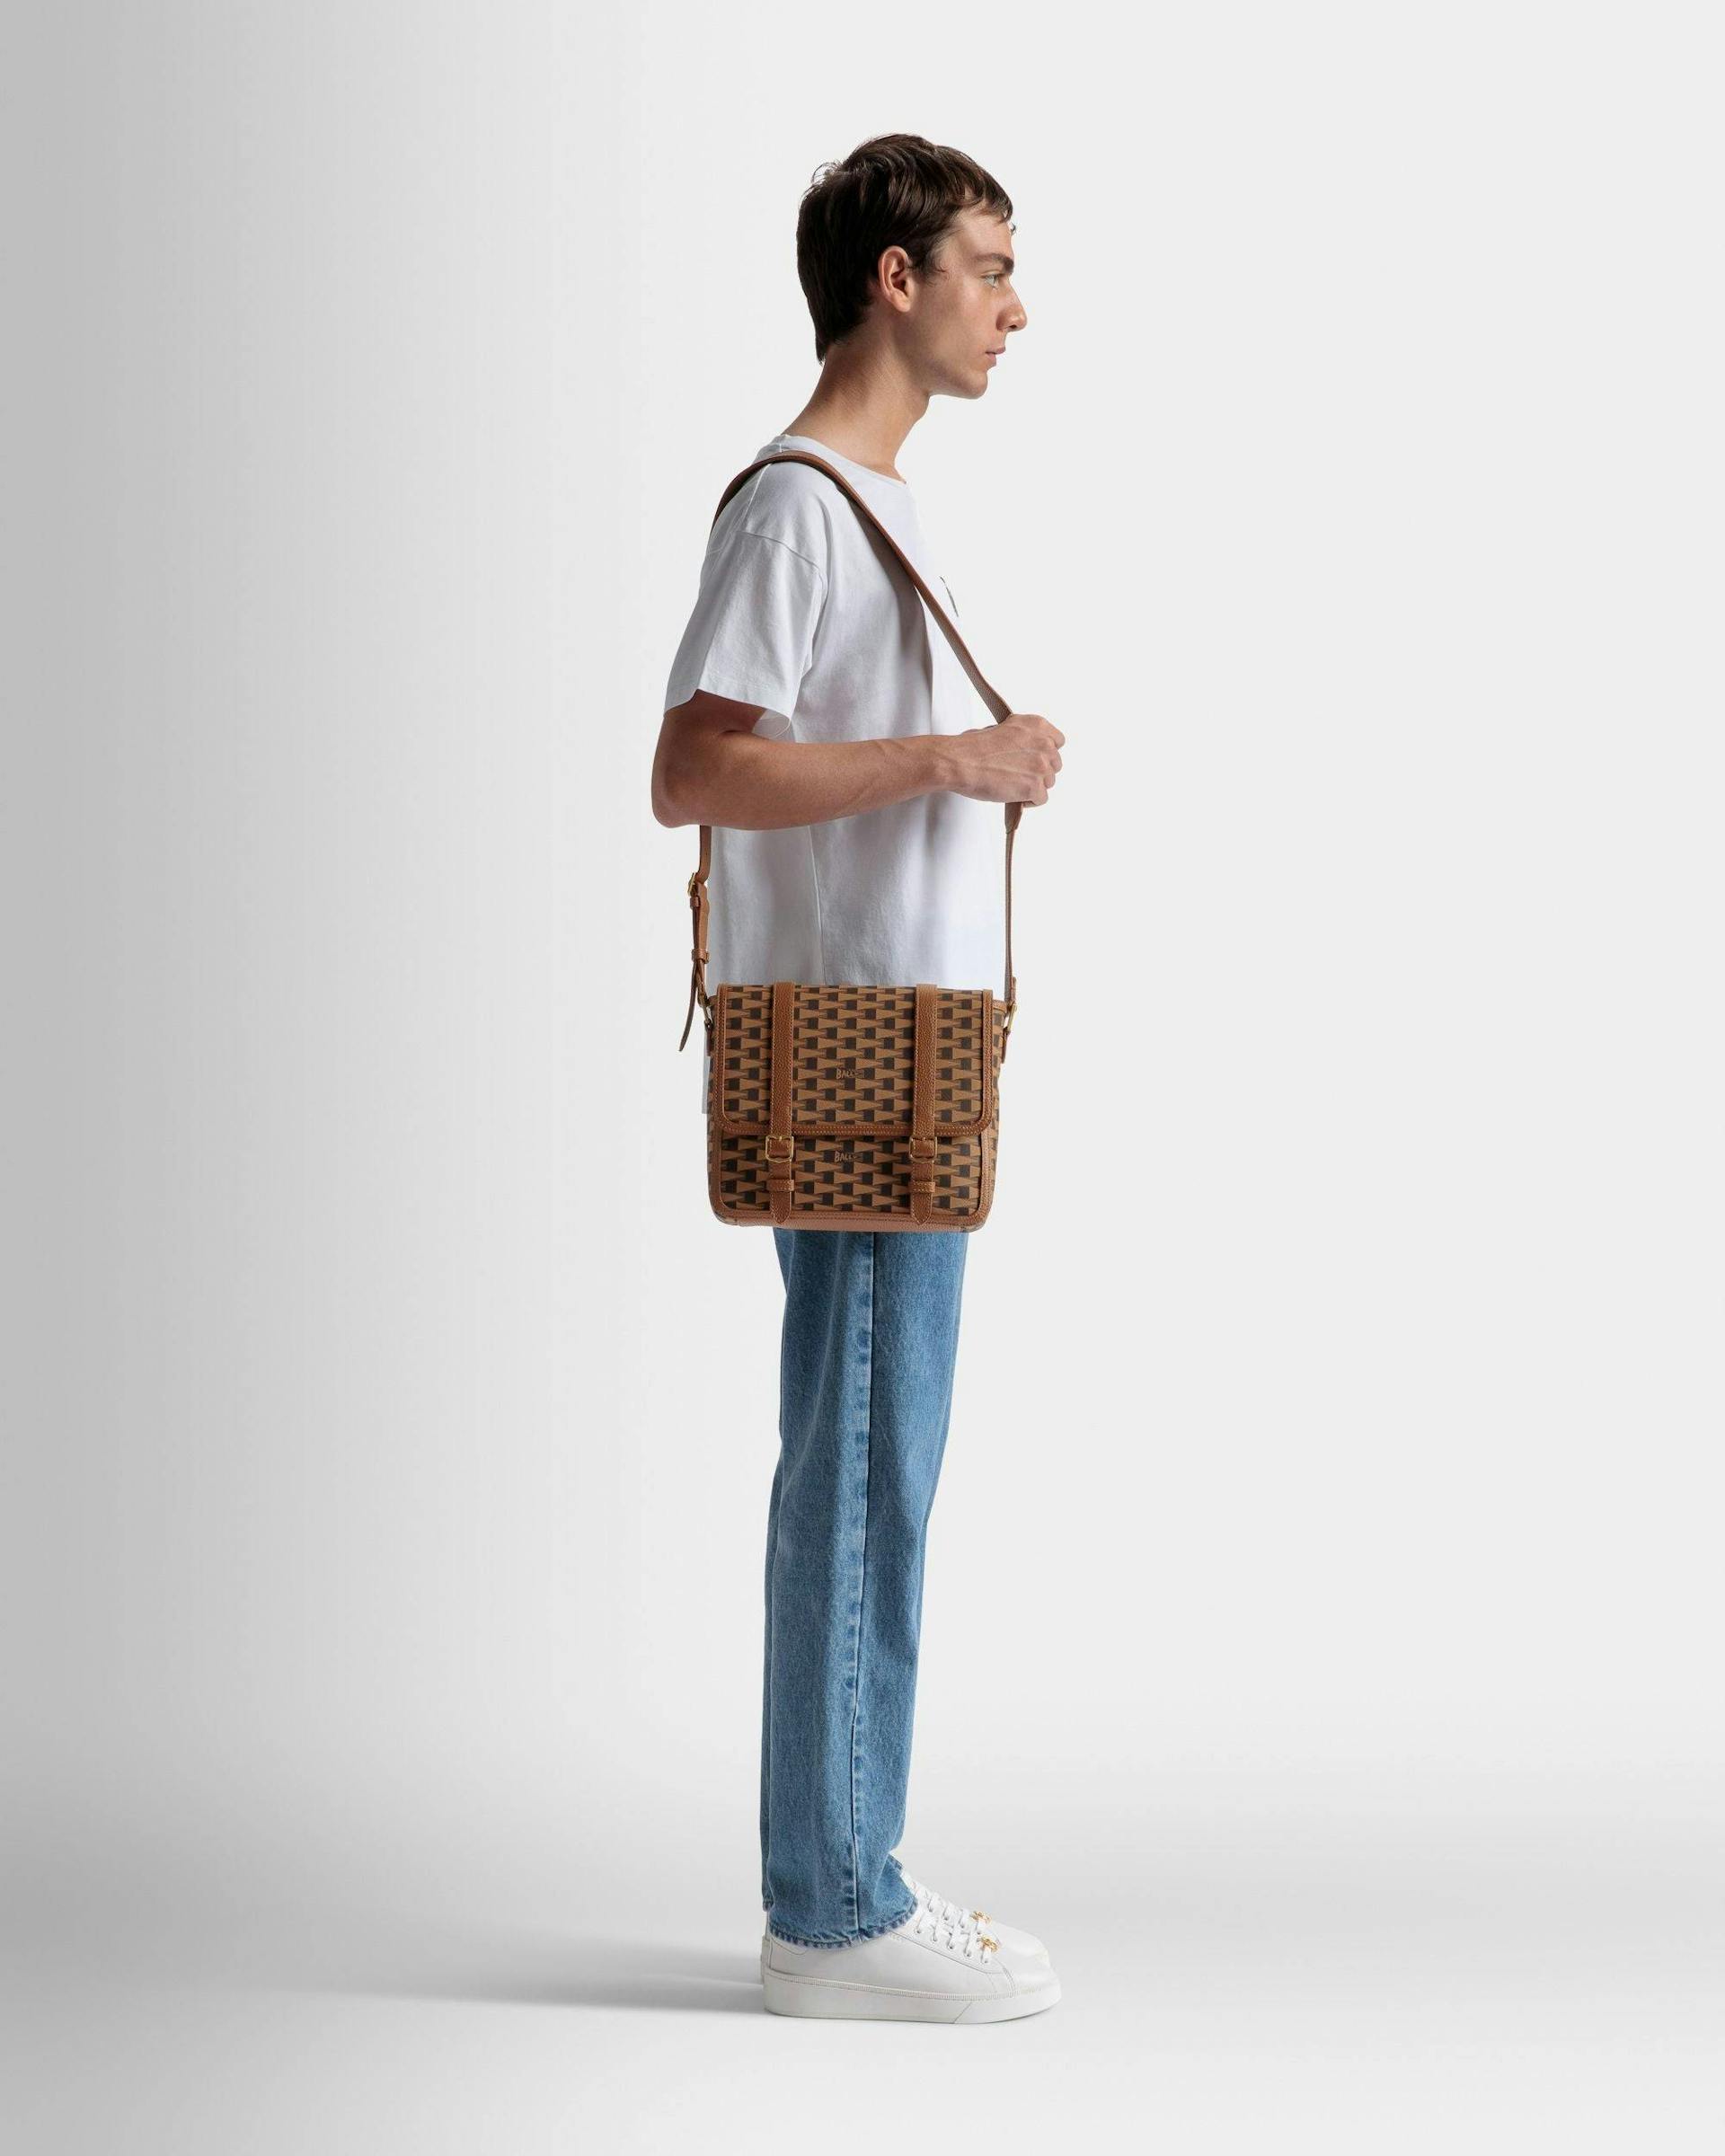 Pennant Messenger Bag In Desert TPU - Men's - Bally - 02